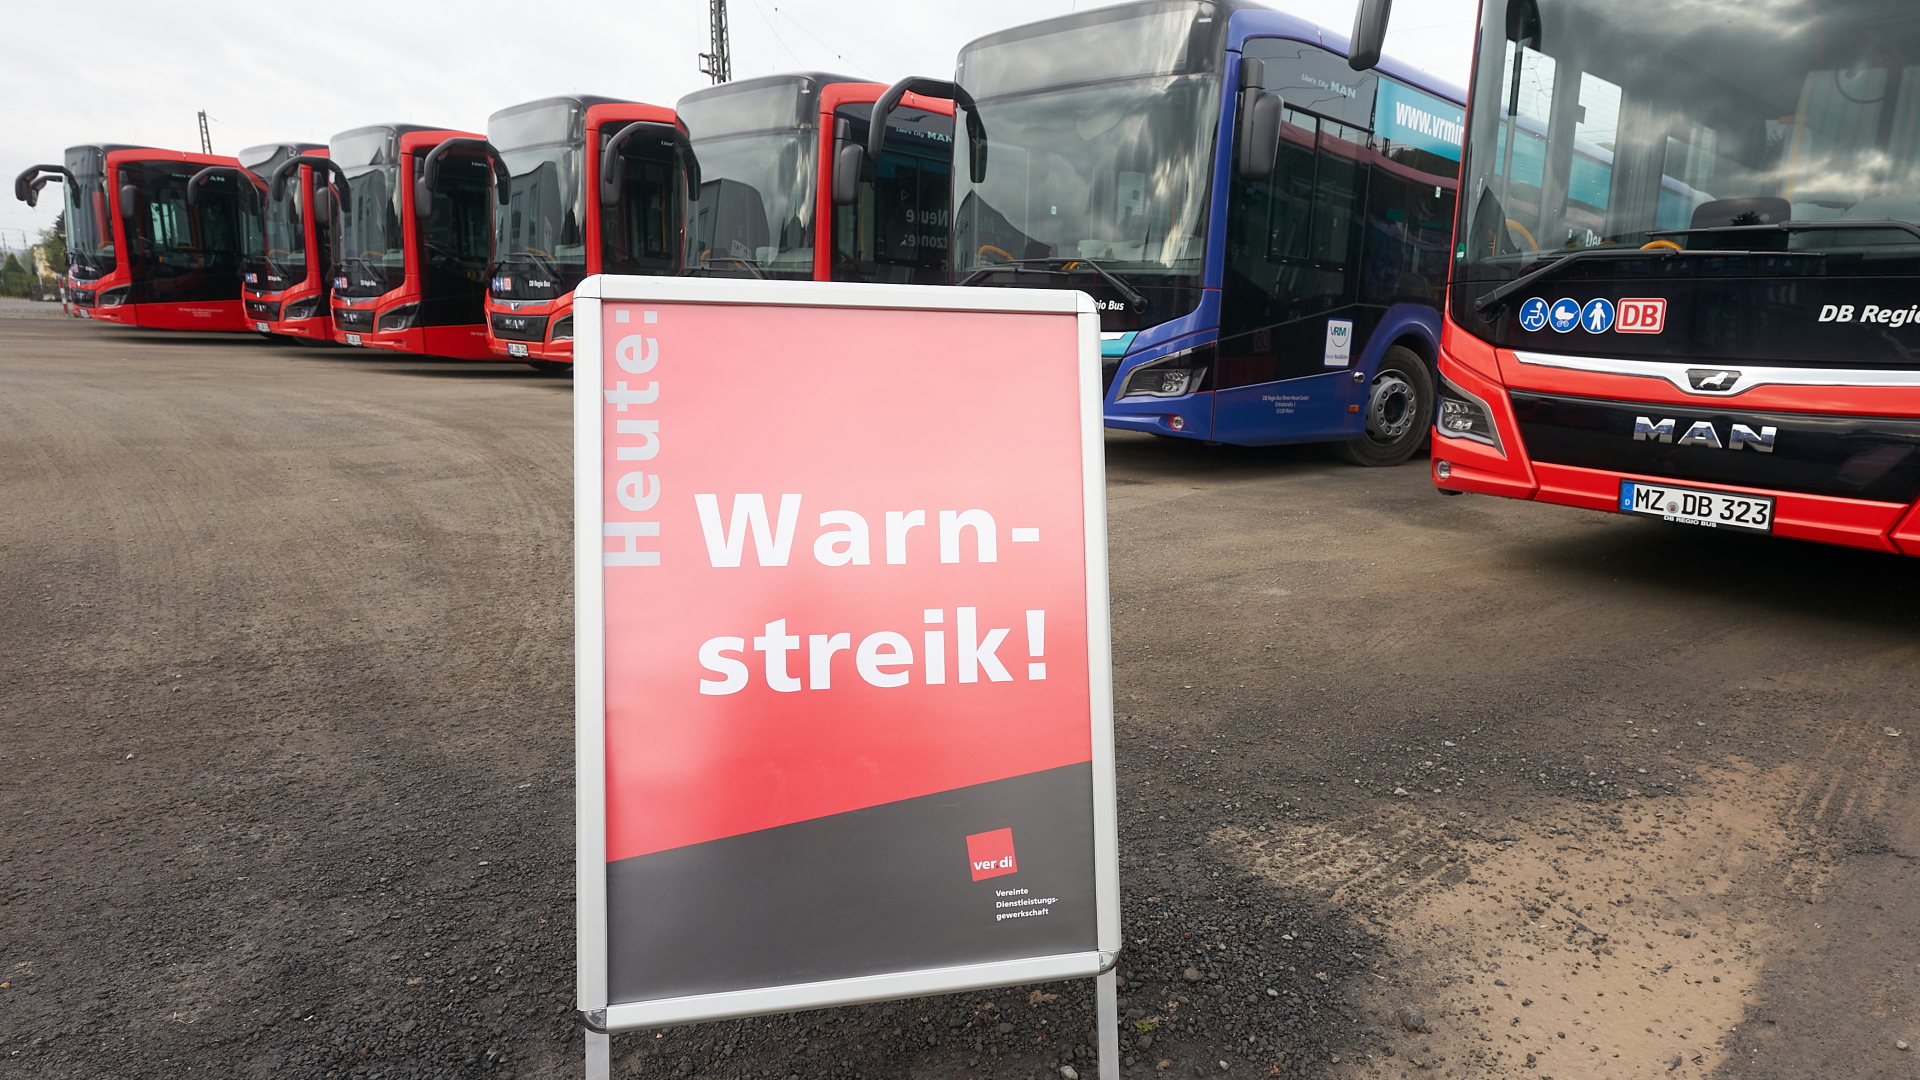 Archiv: Linienbusse parken auf einem Betriebshof während eines vergangenen Ver-di-Warnstreiks